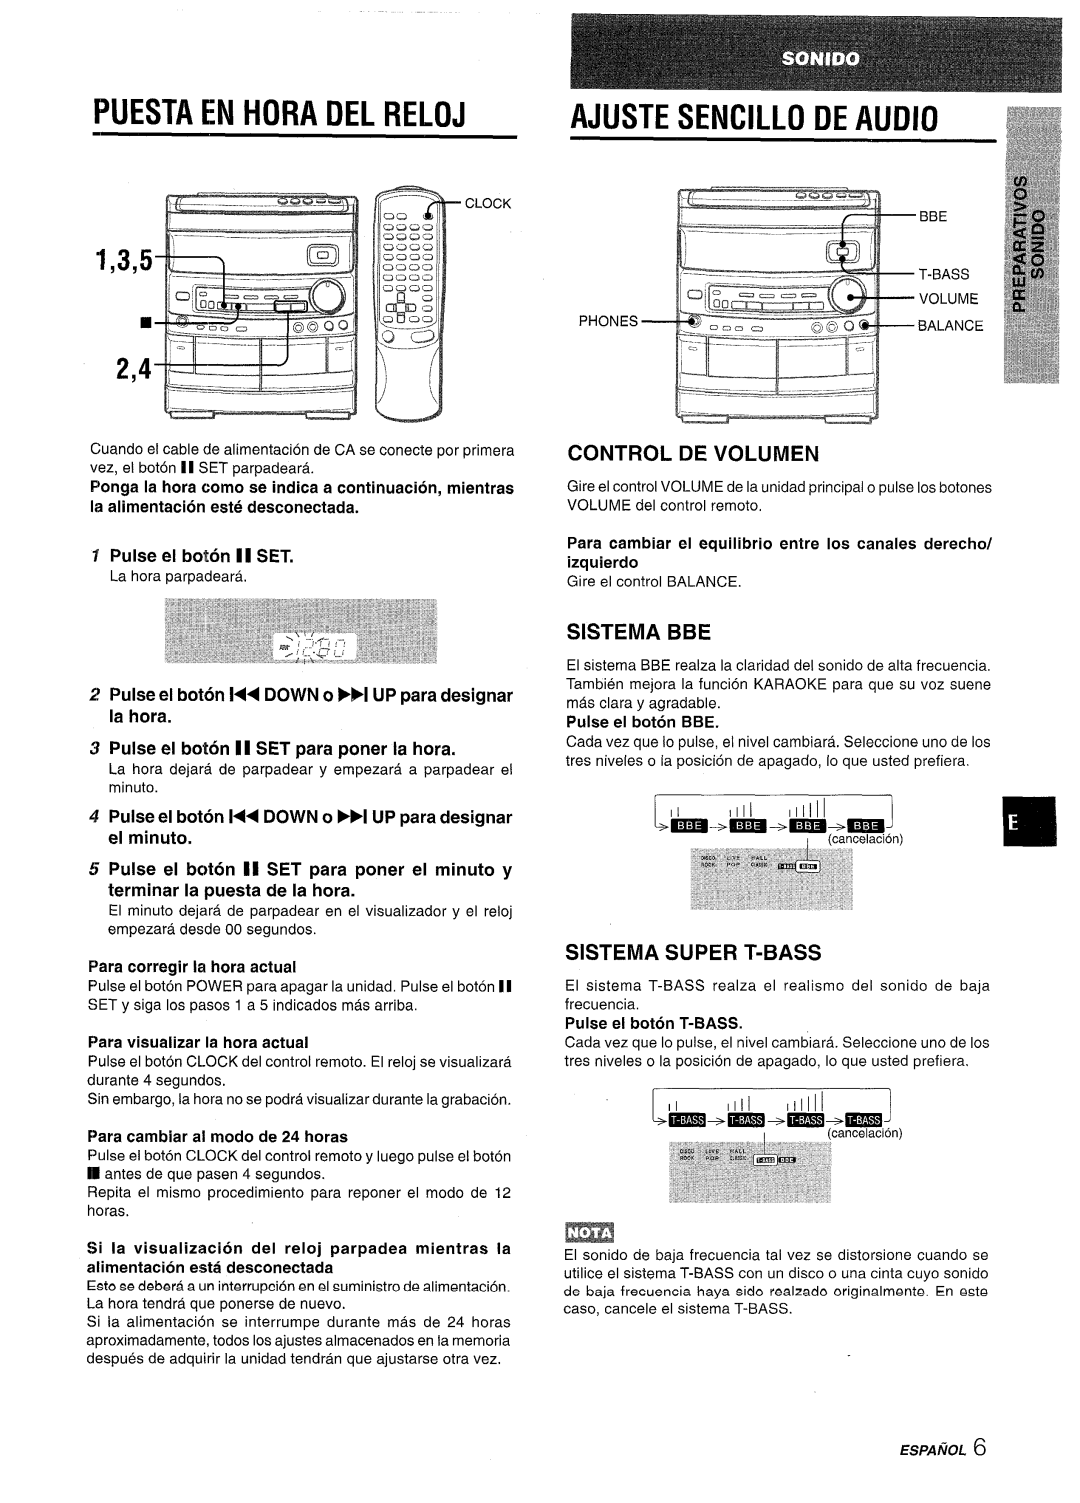 Aiwa NSX-AV800 Puesta En Hora Del Reloj, Ajuste Sencillo De Audio, Control De Volumen, Sistema Bbe, Sistema Super T-Bass 